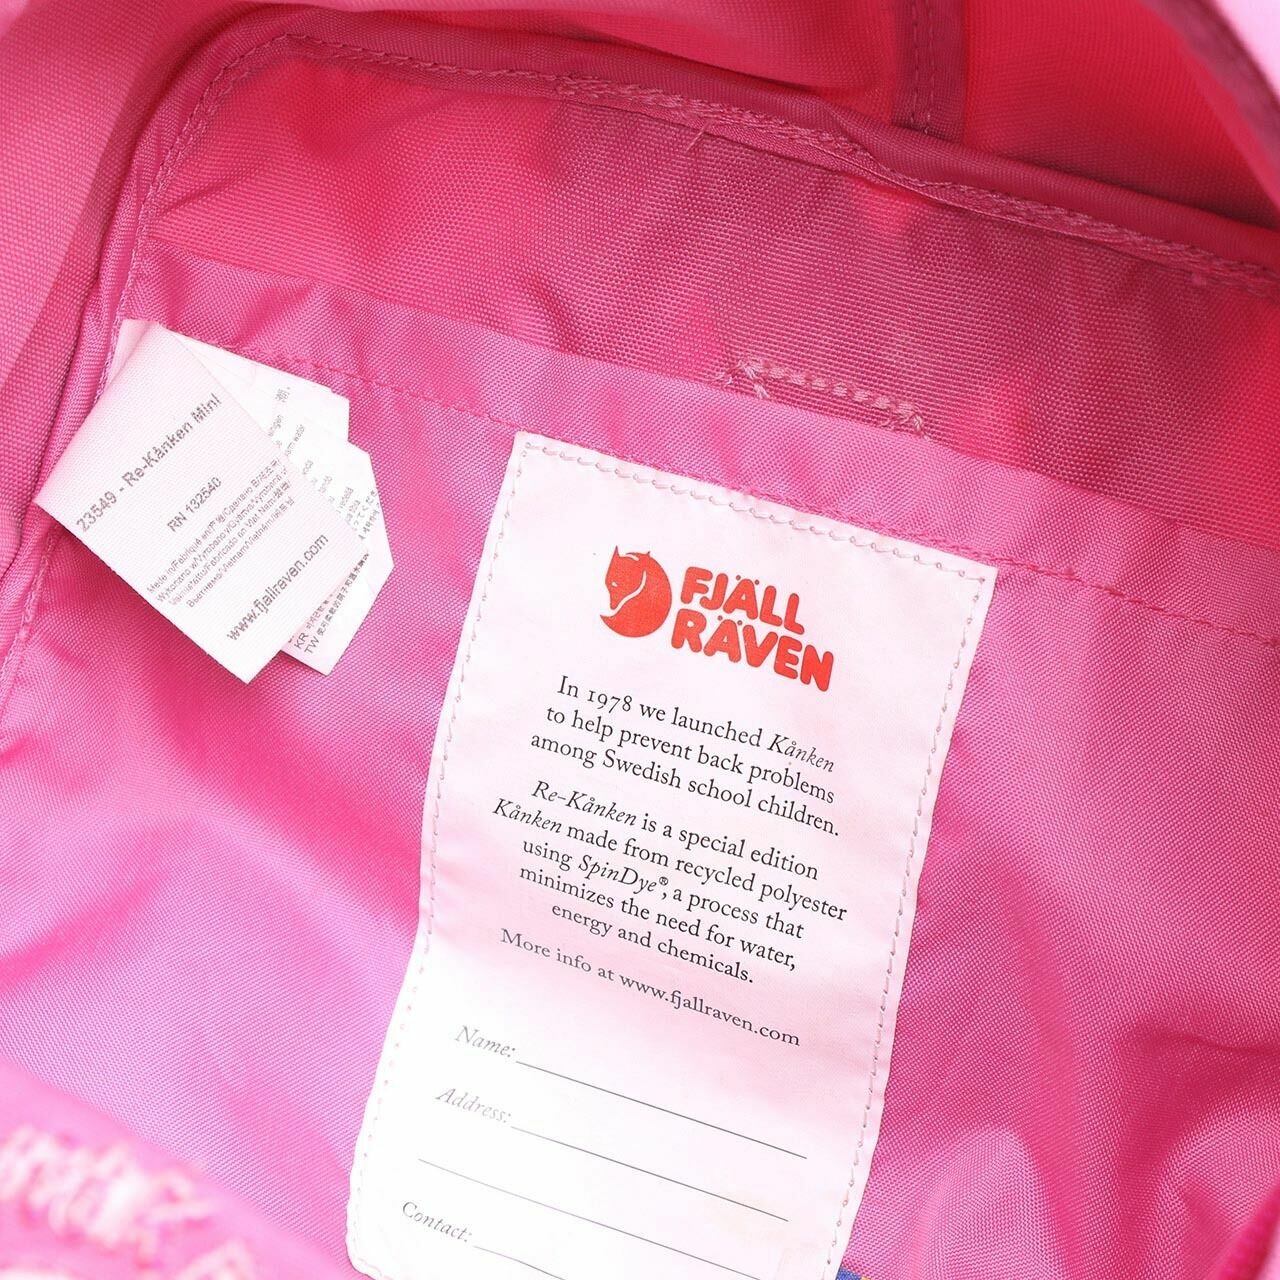 FJALLRAVEN KANKEN Pink Backpack